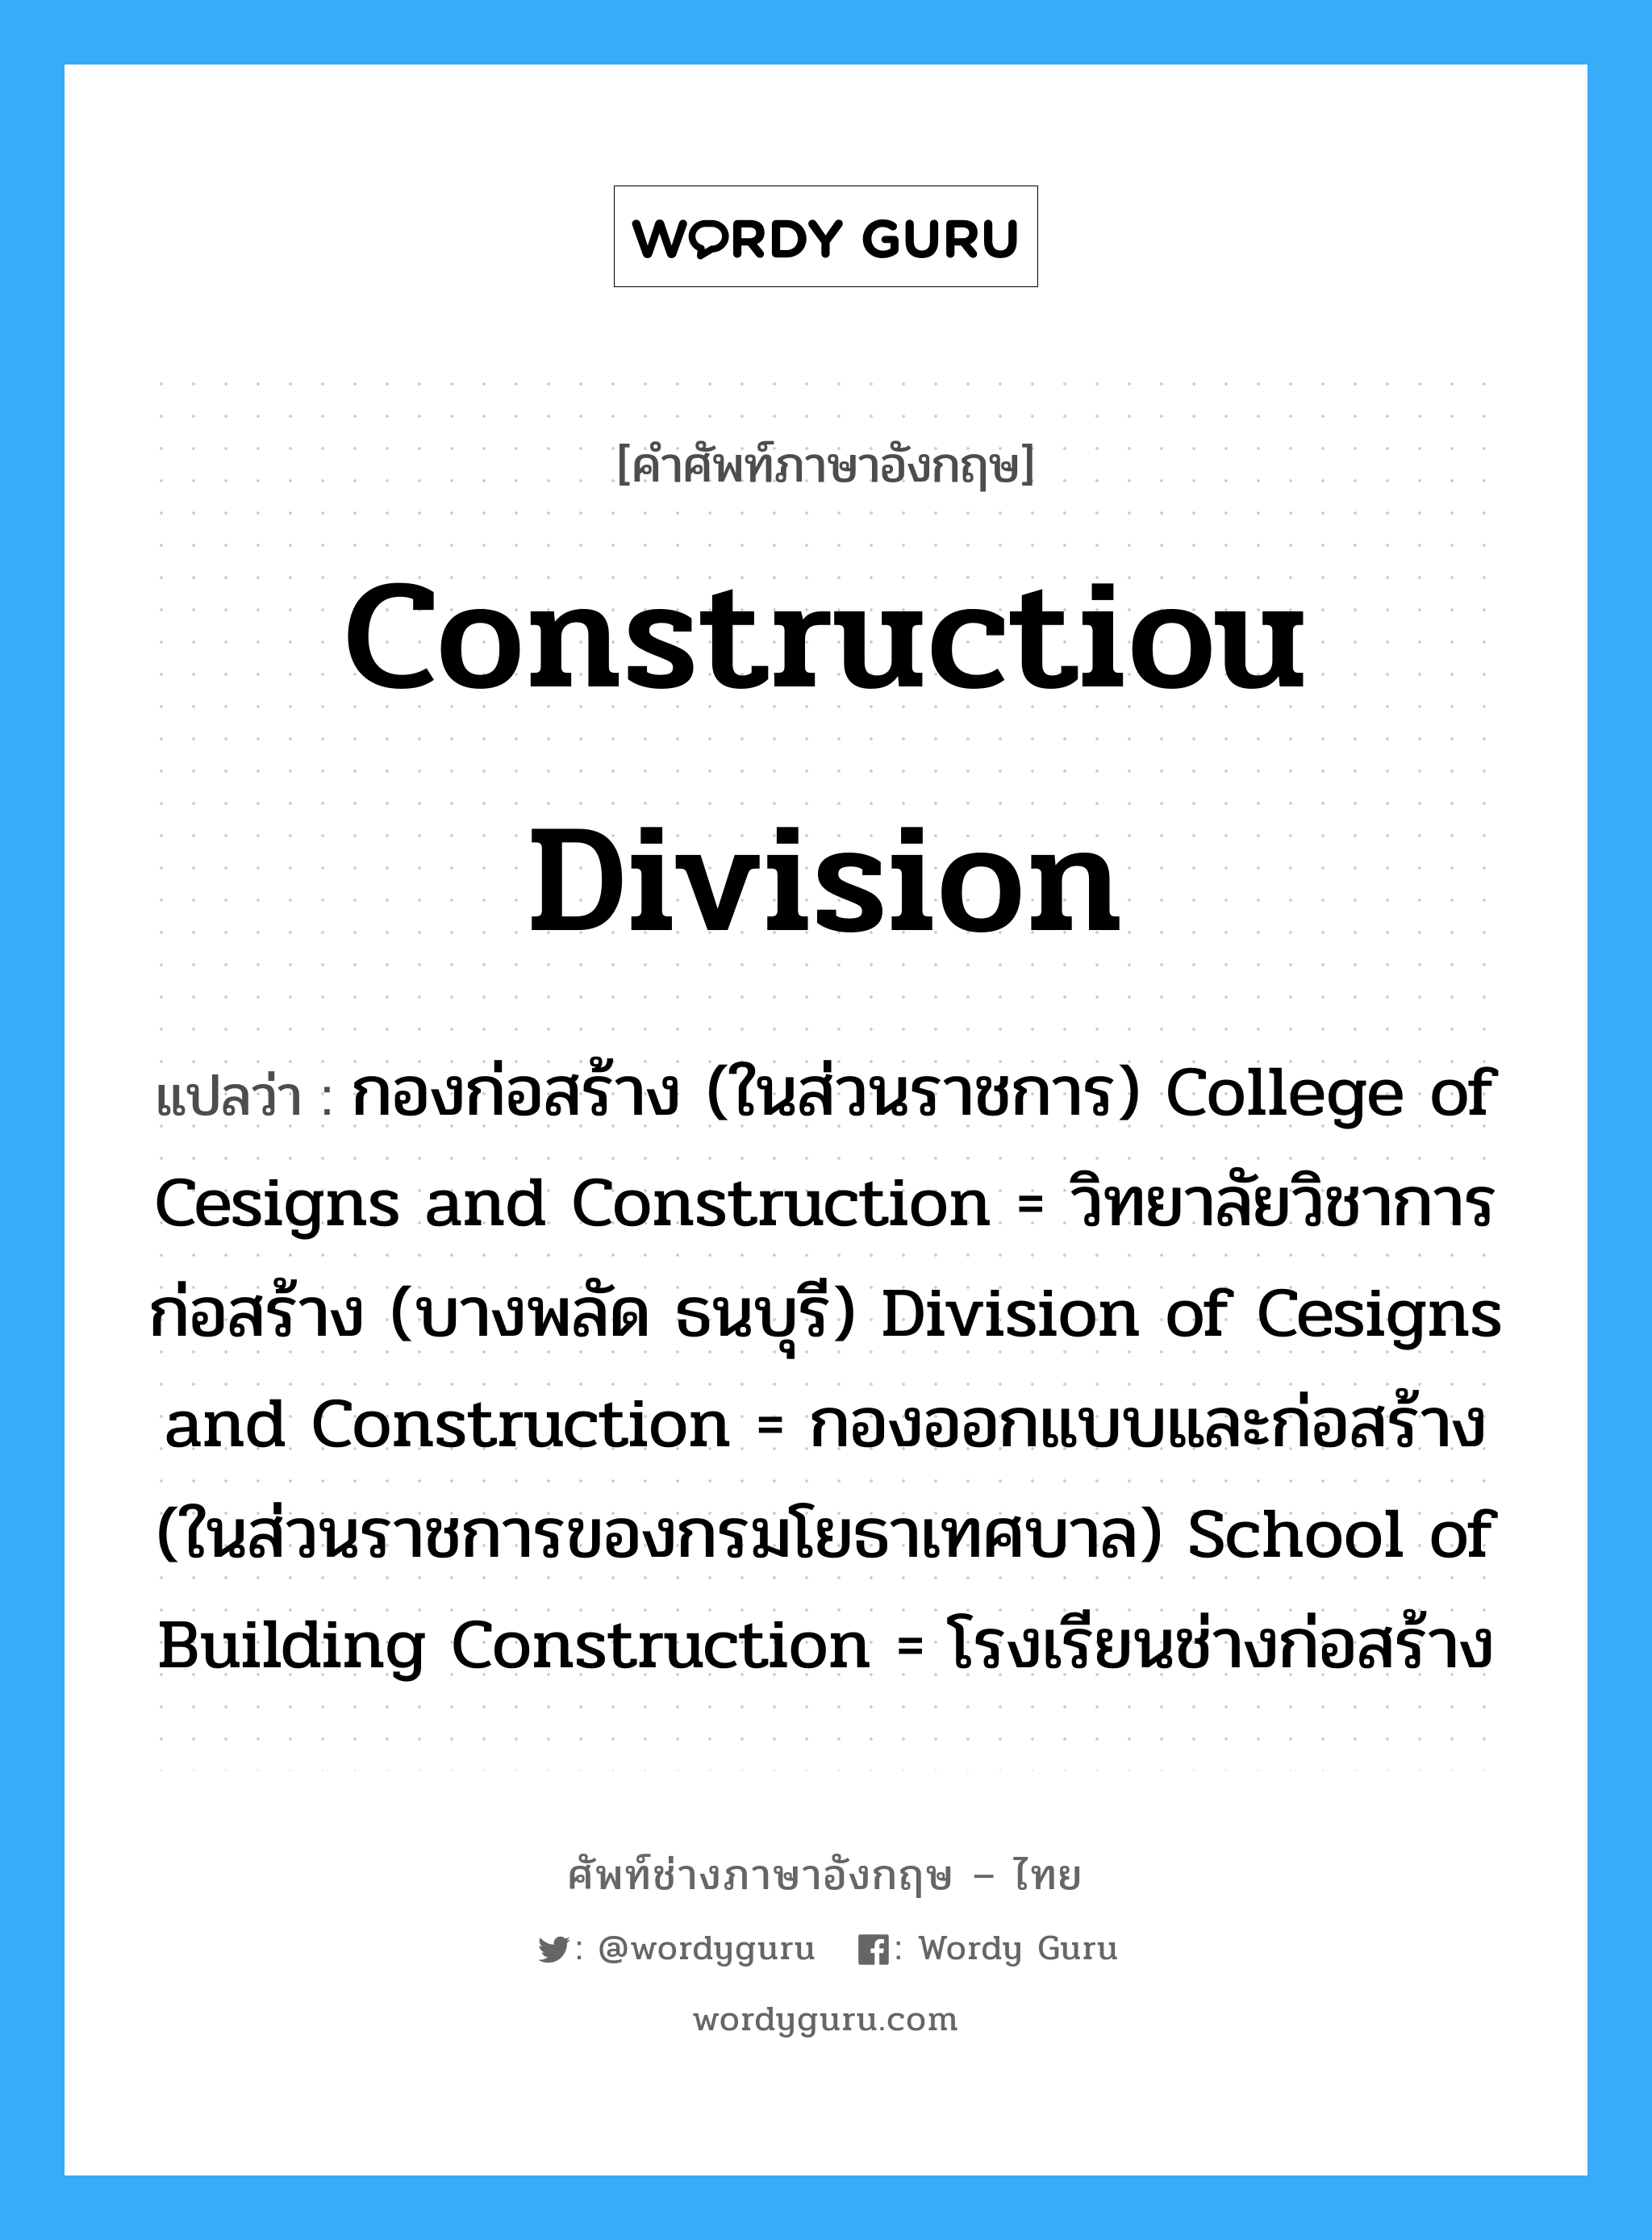 Constructiou Division แปลว่า?, คำศัพท์ช่างภาษาอังกฤษ - ไทย Constructiou Division คำศัพท์ภาษาอังกฤษ Constructiou Division แปลว่า กองก่อสร้าง (ในส่วนราชการ) College of Cesigns and Construction = วิทยาลัยวิชาการก่อสร้าง (บางพลัด ธนบุรี) Division of Cesigns and Construction = กองออกแบบและก่อสร้าง (ในส่วนราชการของกรมโยธาเทศบาล) School of Building Construction = โรงเรียนช่างก่อสร้าง